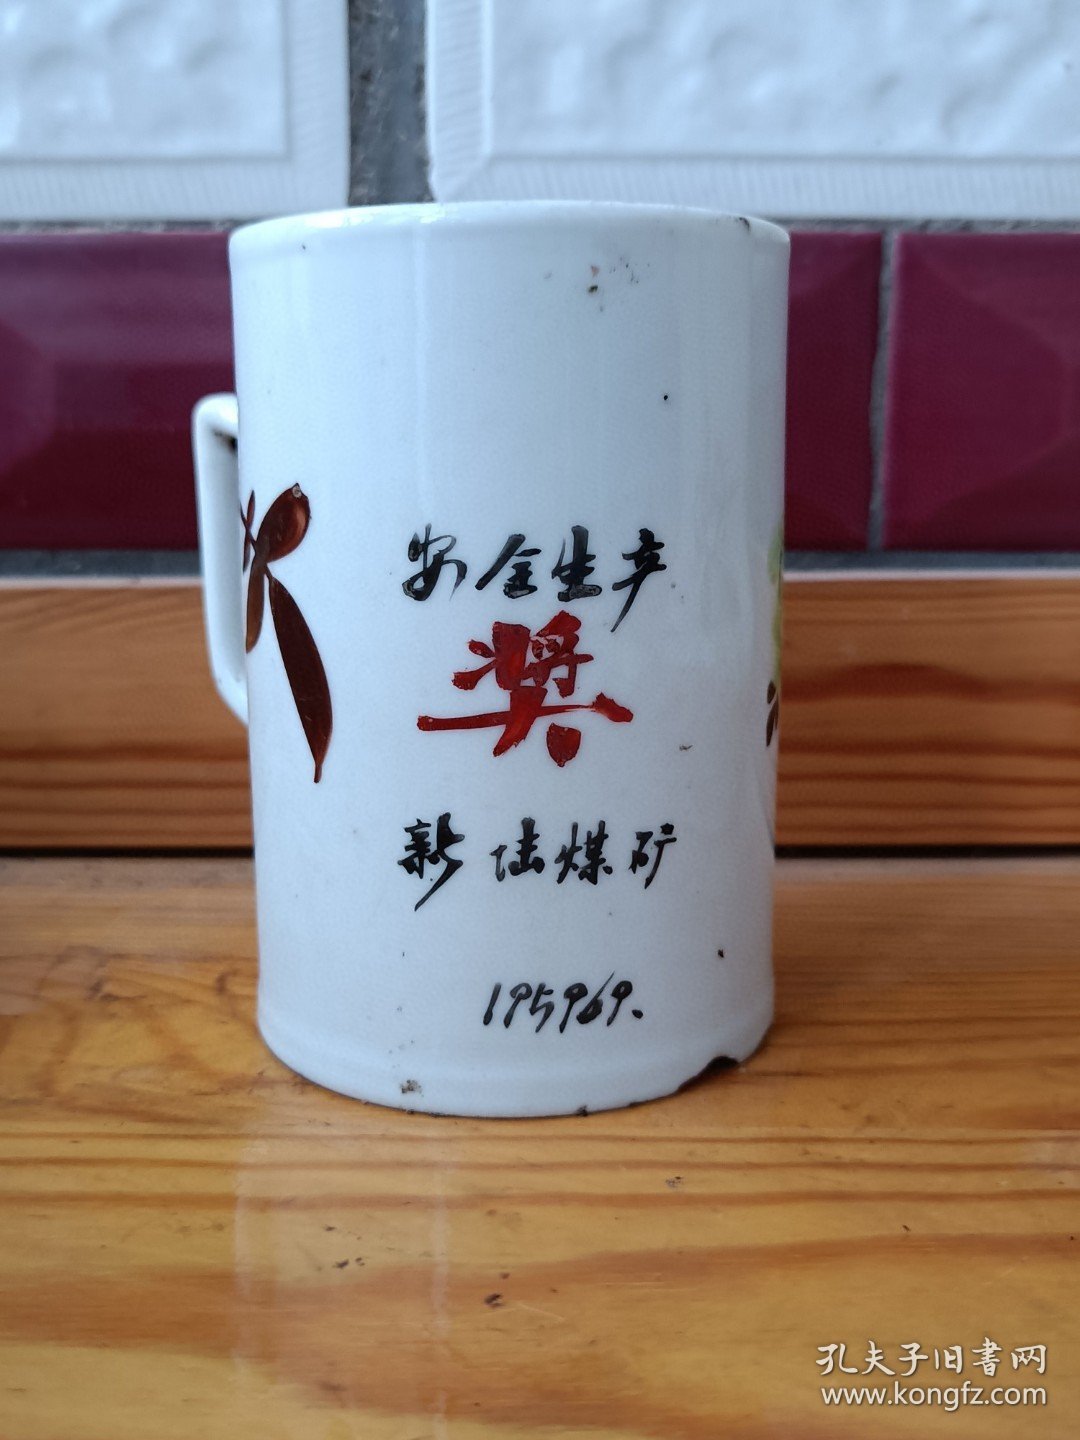 1959年新陆煤矿安全生产奖江西省景德镇市第三瓷品手工艺生产合作出品瓷杯，纯手绘，品相如图，尺寸如图，包老保真